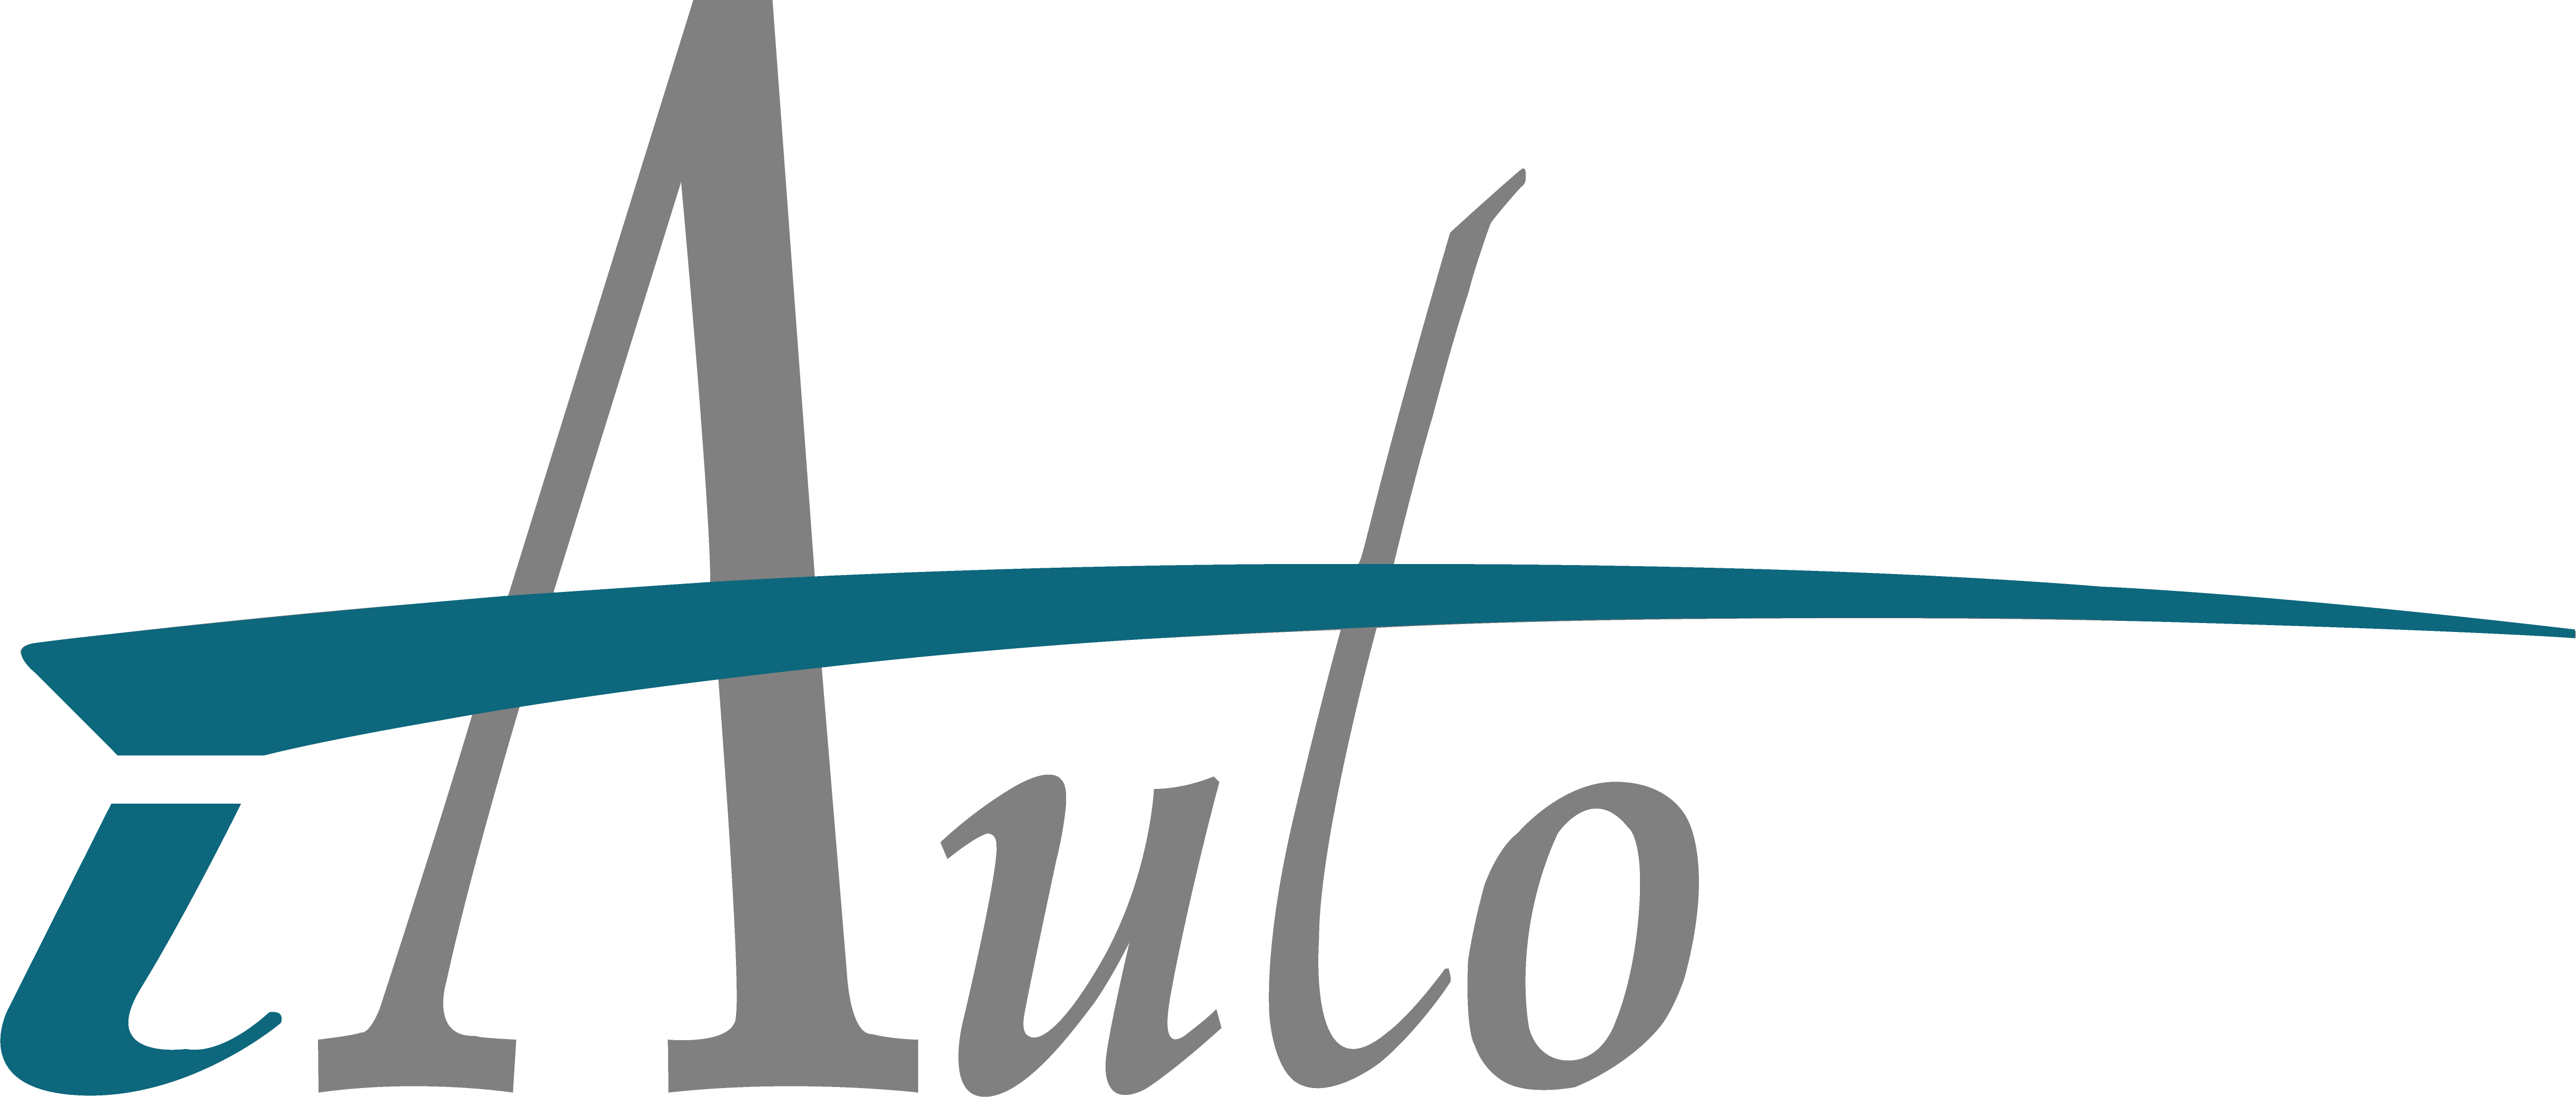 iAuto Technology Logo